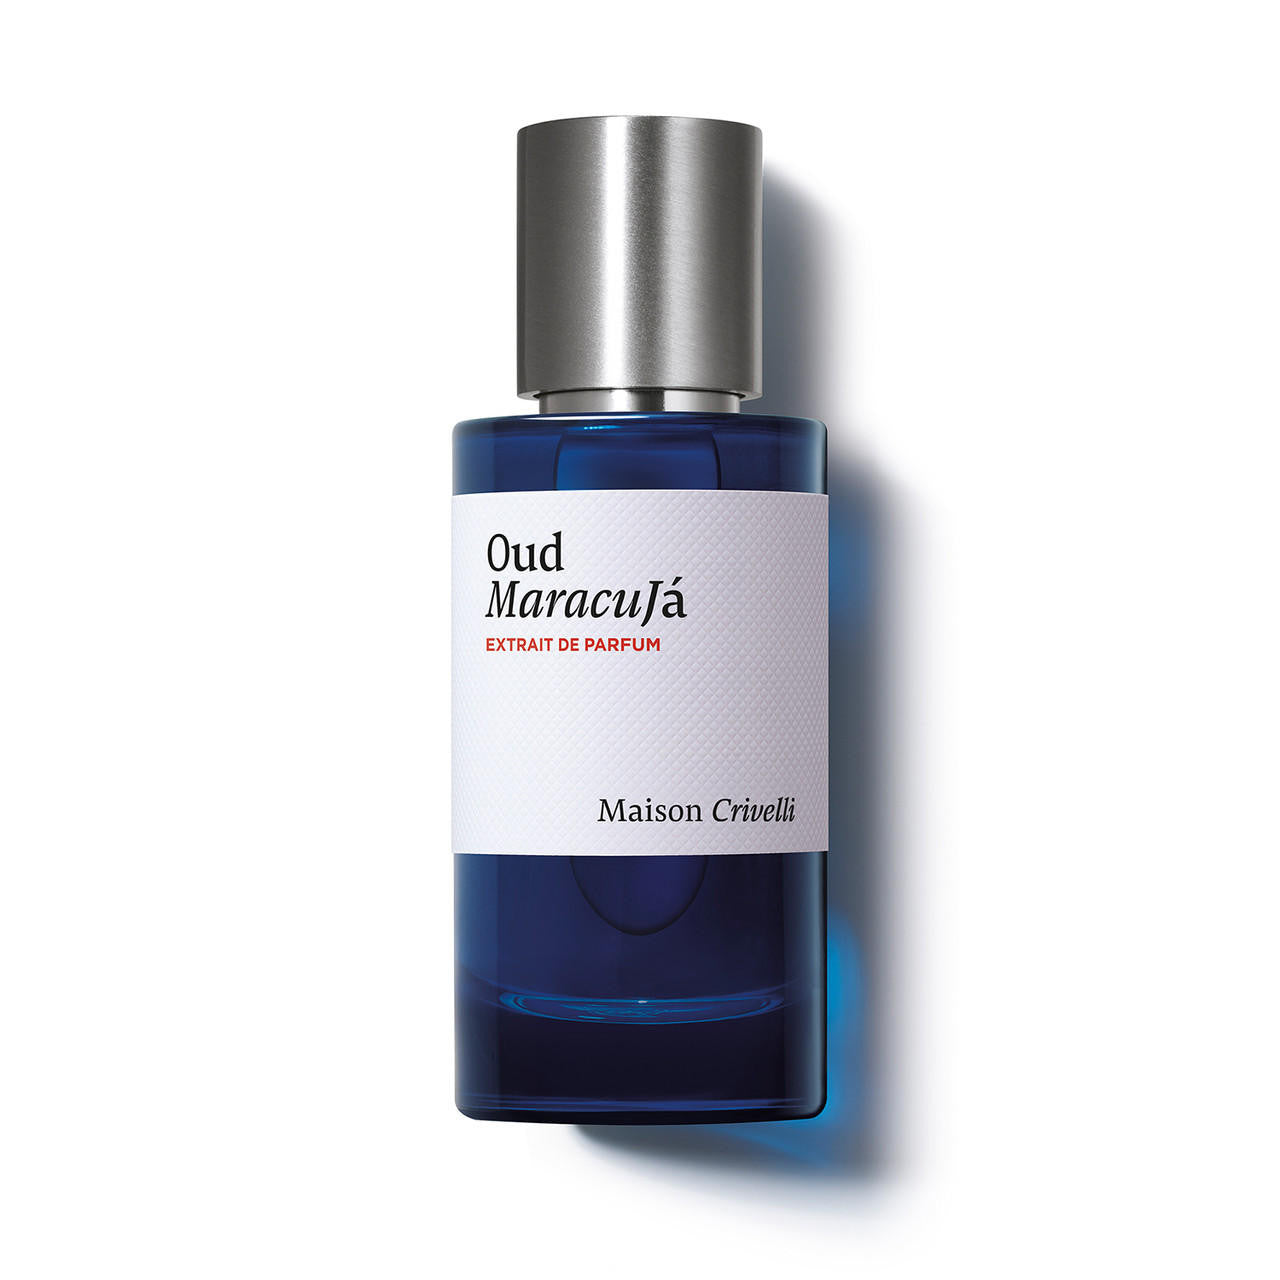 Maison Crivelli MAISON CRIVELLI Oud Maracuja Extrait de Parfum 